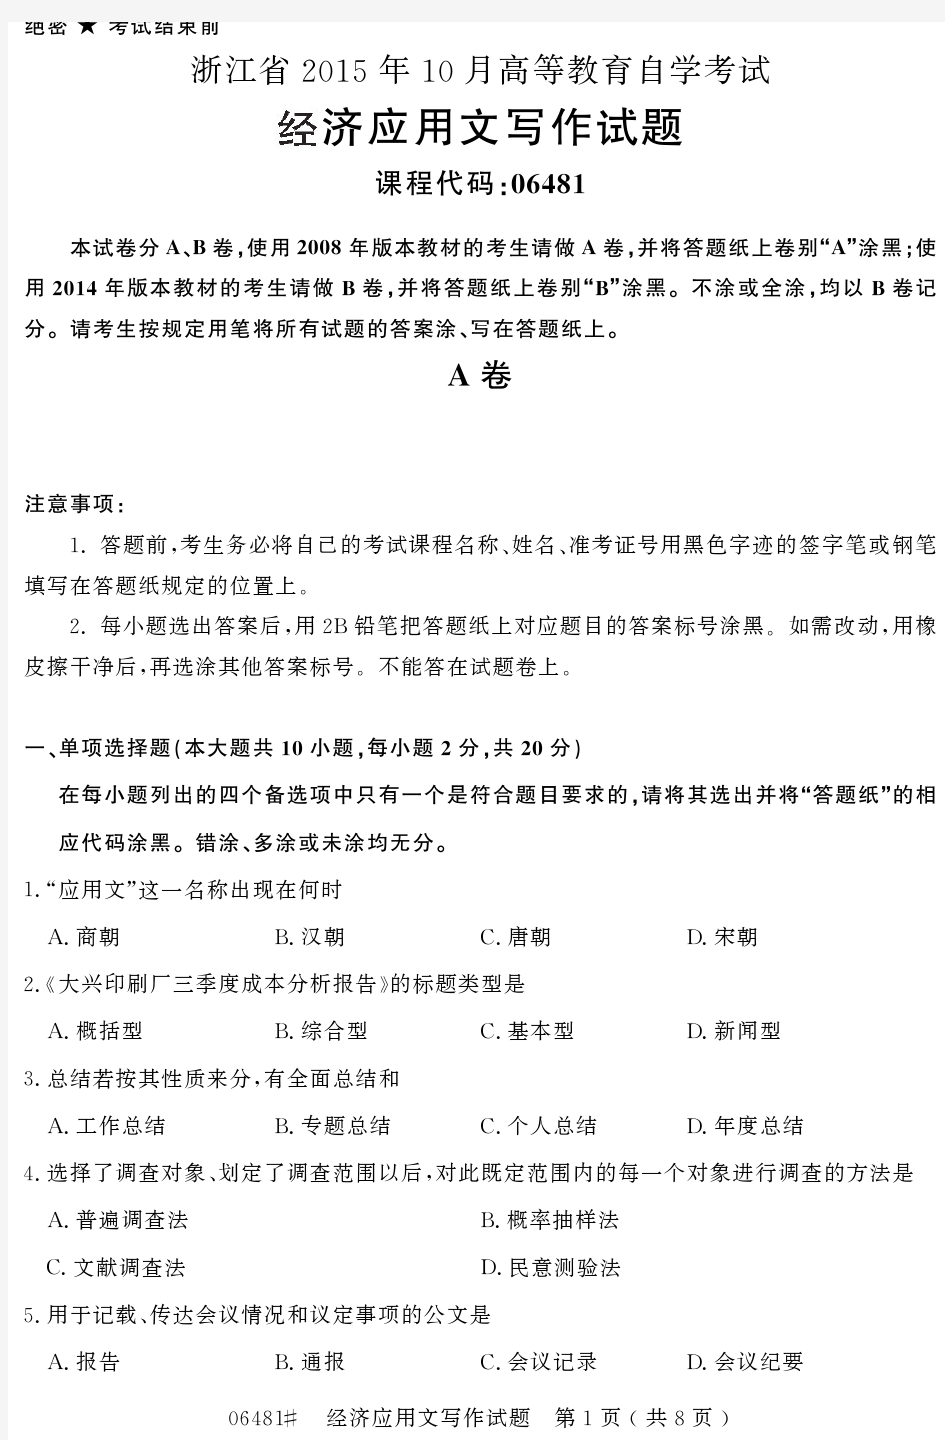 自学考试 浙江省2015年10月高等教育自学考试经济应用文写作试题(06481)